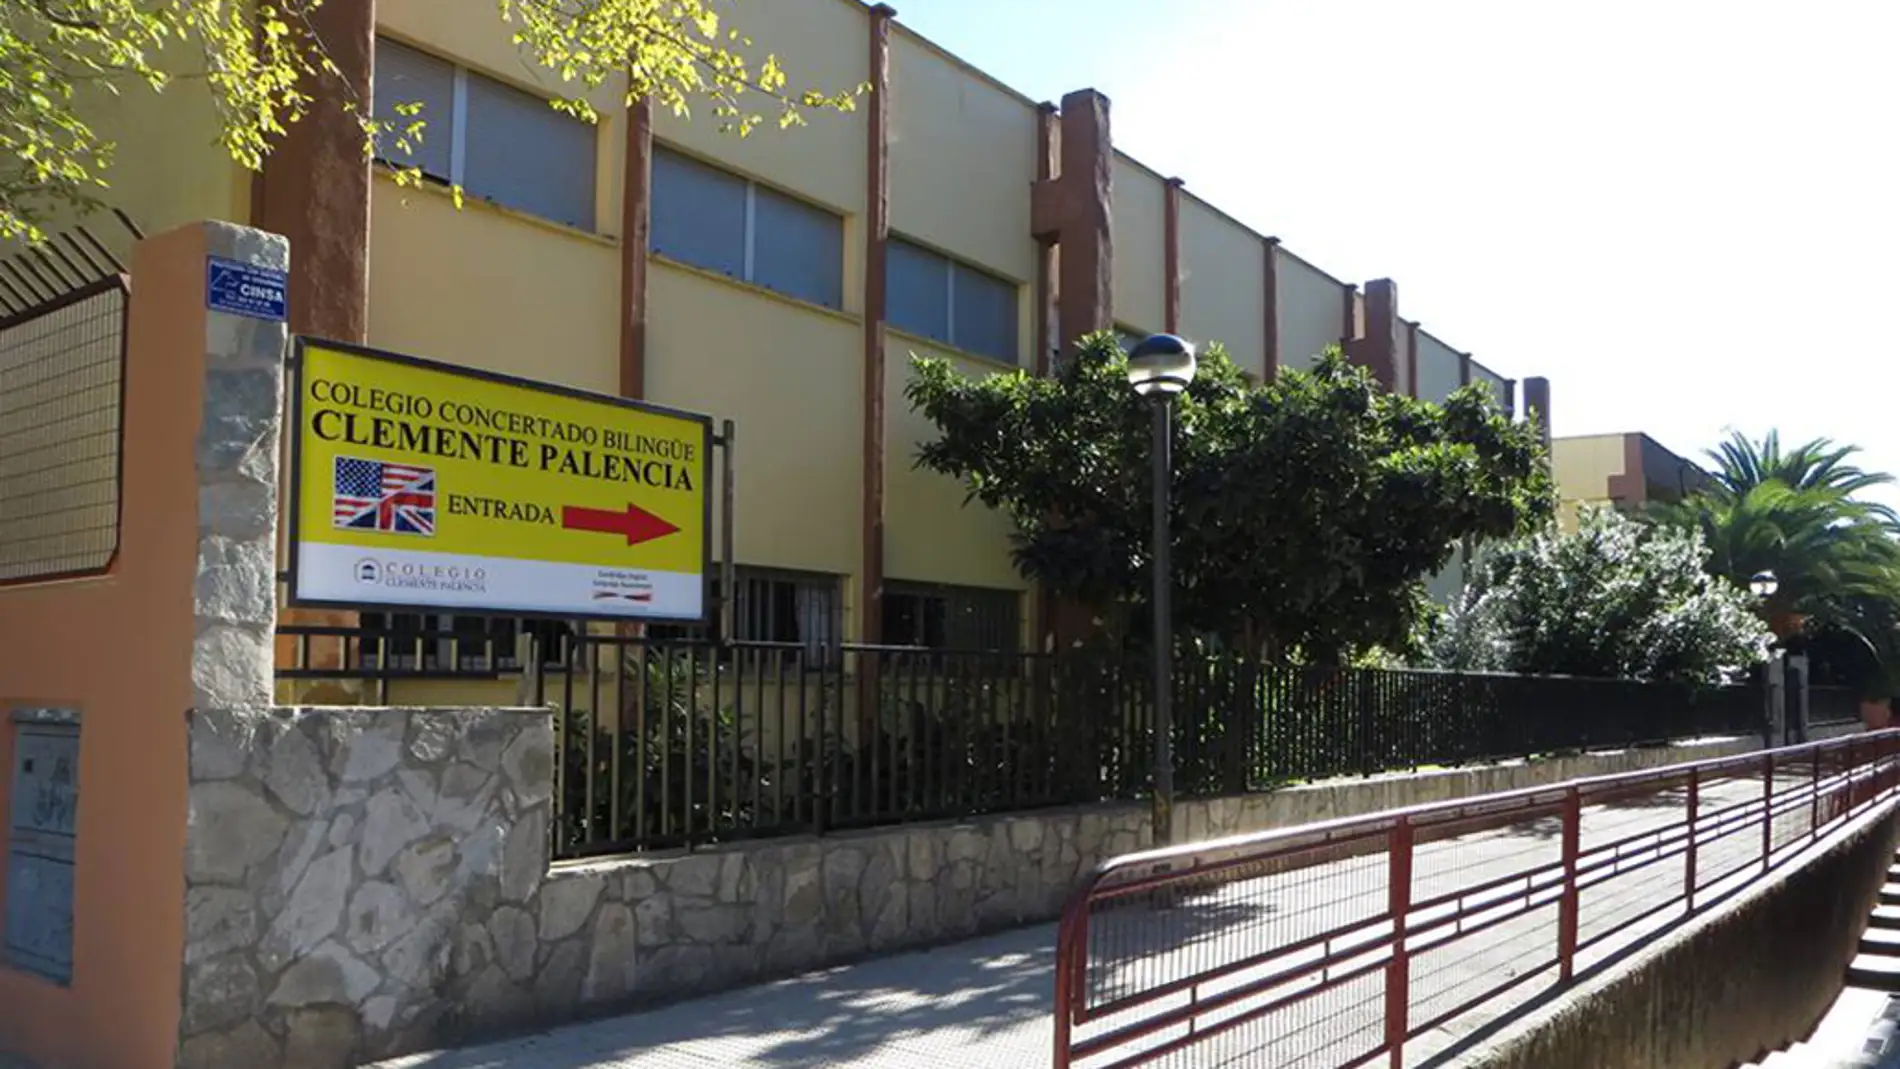 El colegio talaverano Clemente Palencia se prepara para acoger nuevos alumnos